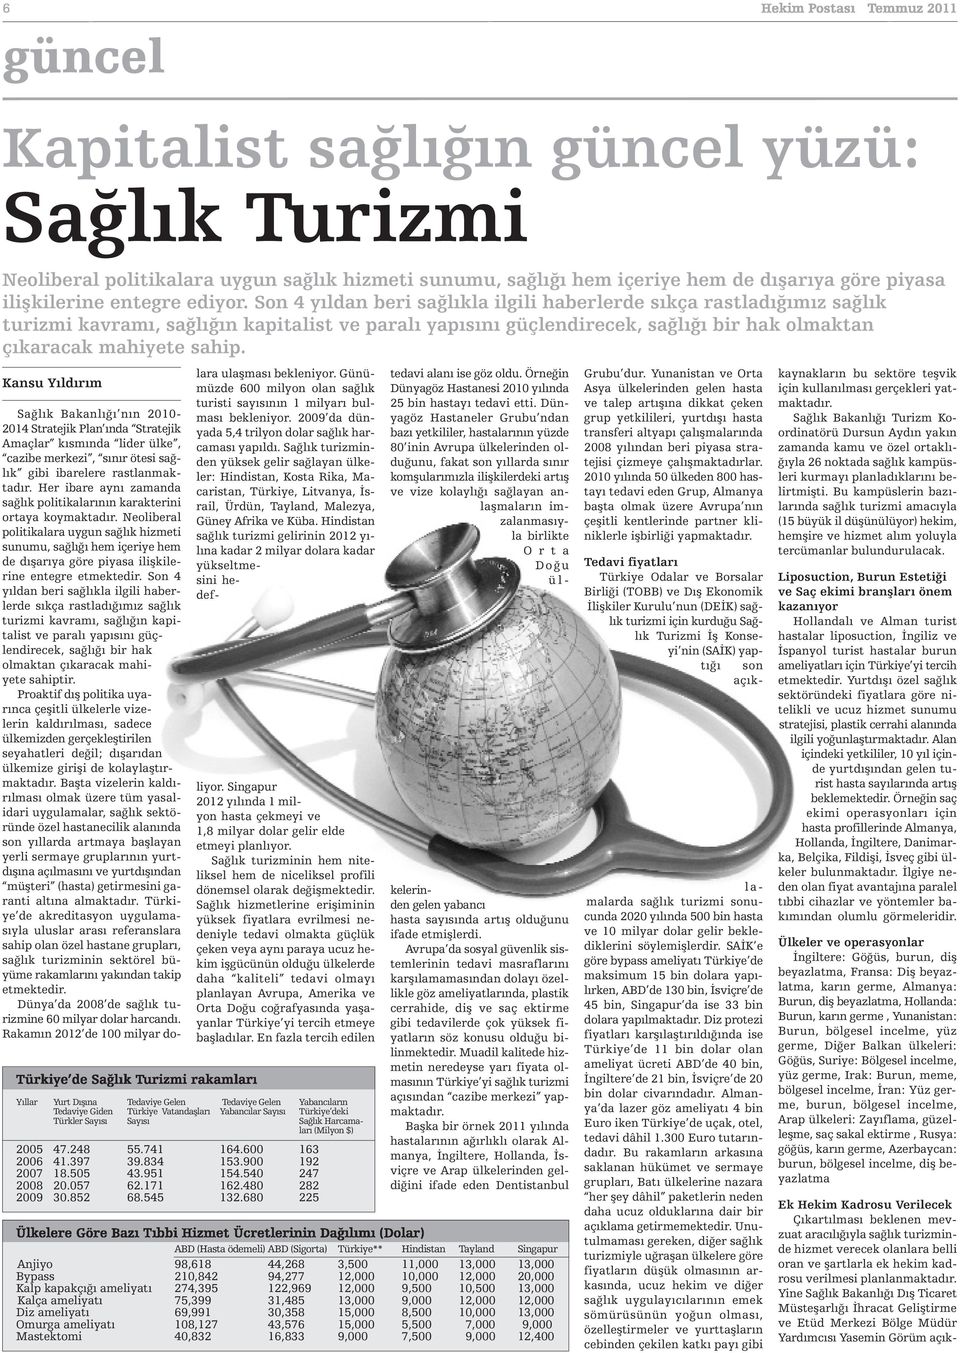 Kansu Yıldırım Türkiye de Sağlık Turizmi rakamları Sağlık Bakanlığı nın 2010-2014 Stratejik Plan ında Stratejik Amaçlar kısmında lider ülke, cazibe merkezi, sınır ötesi sağlık gibi ibarelere